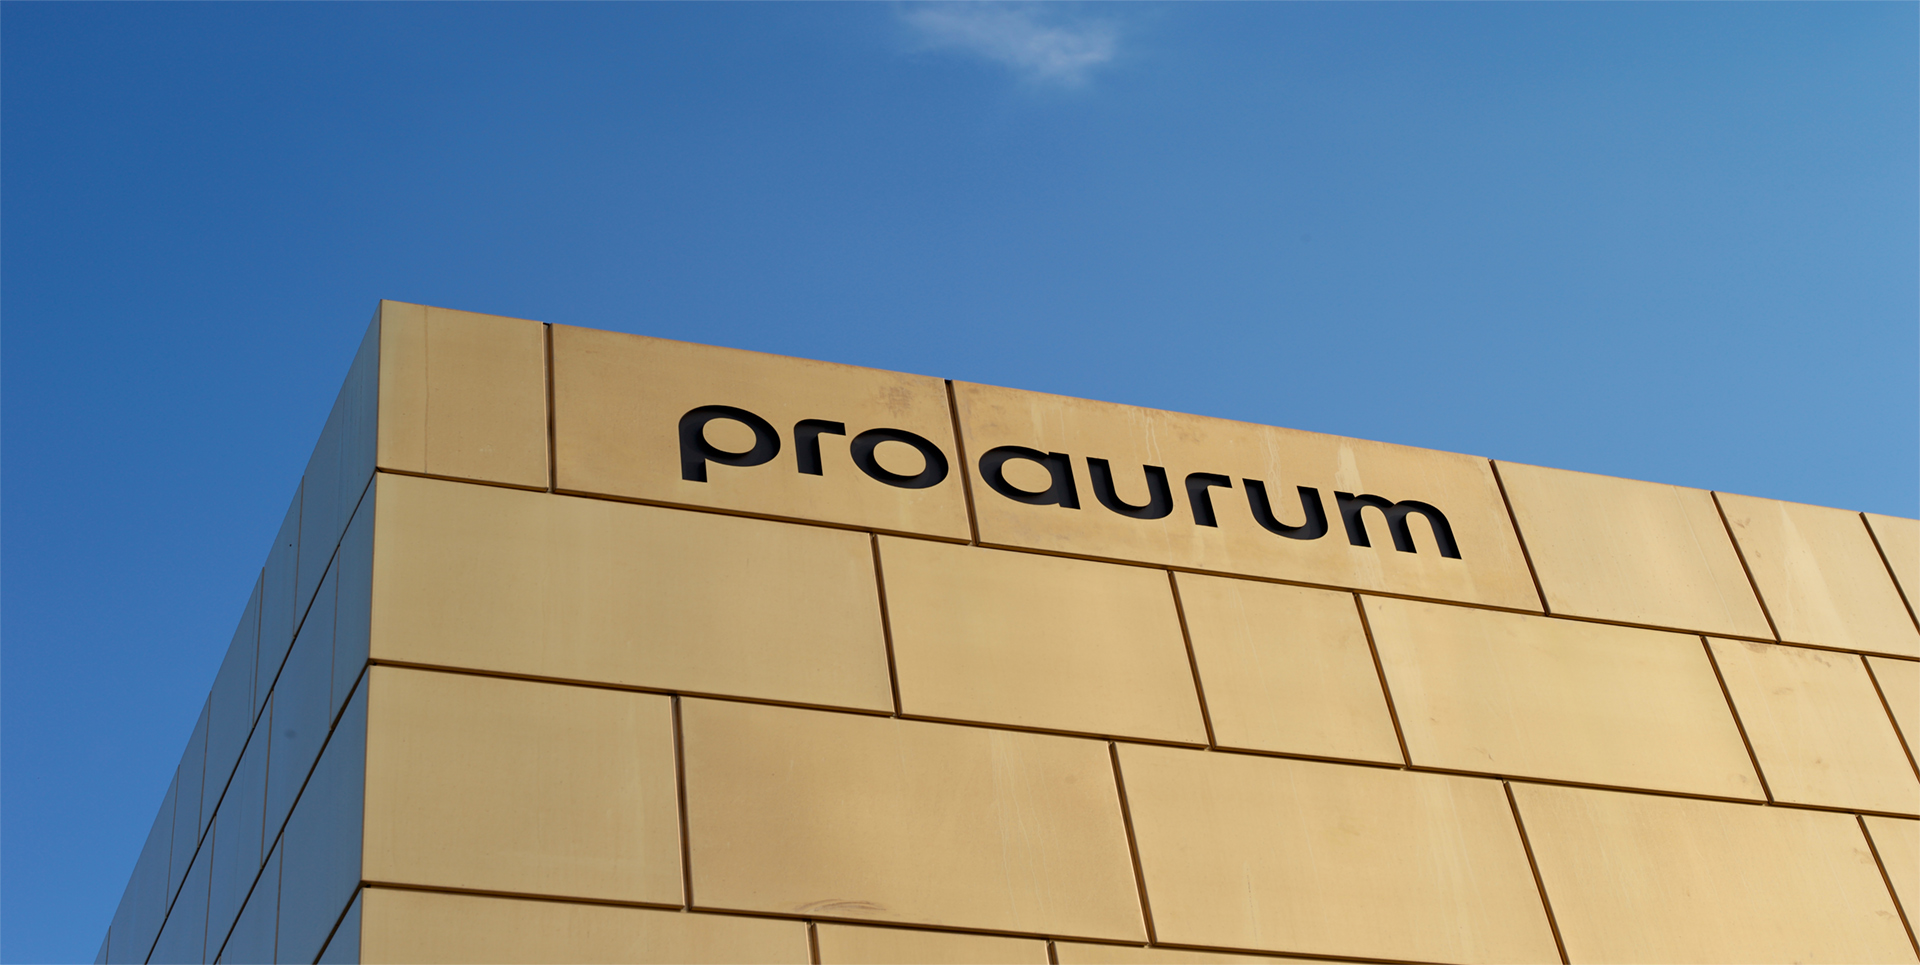 (c) Proaurum-goldhaus.de